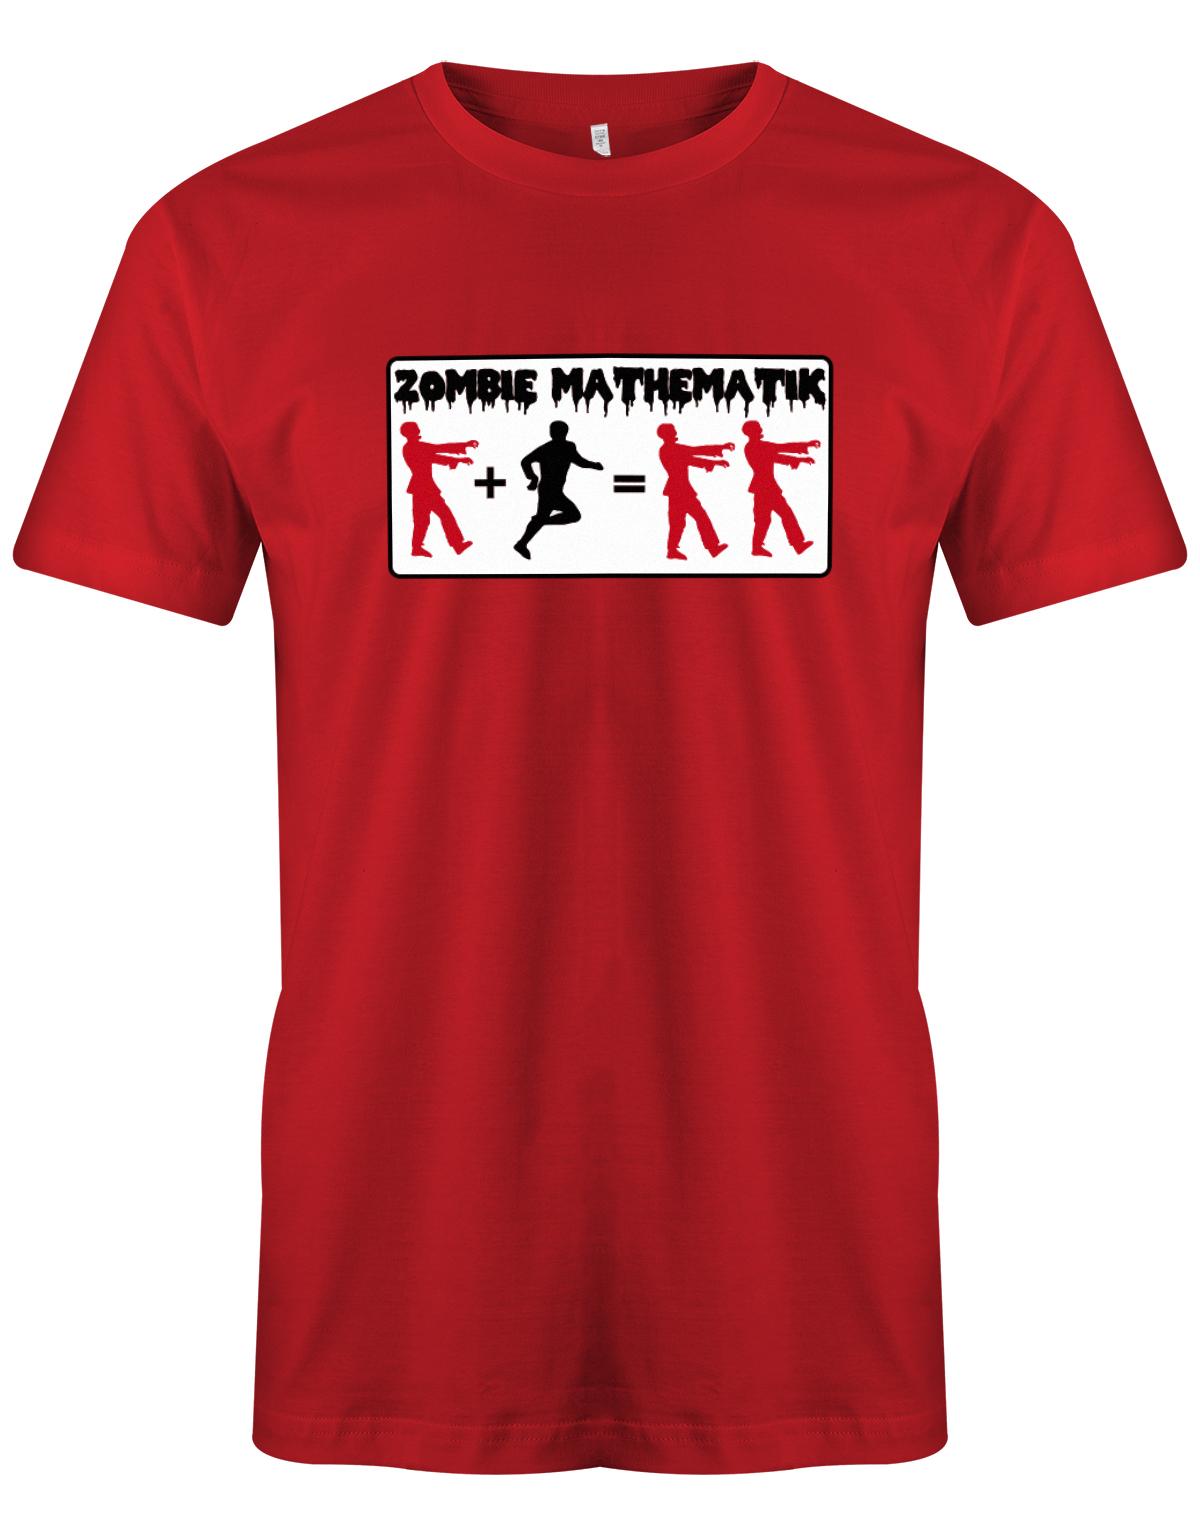 Zombie-Mathematik-Halloween-Shirt-Herren-Rot